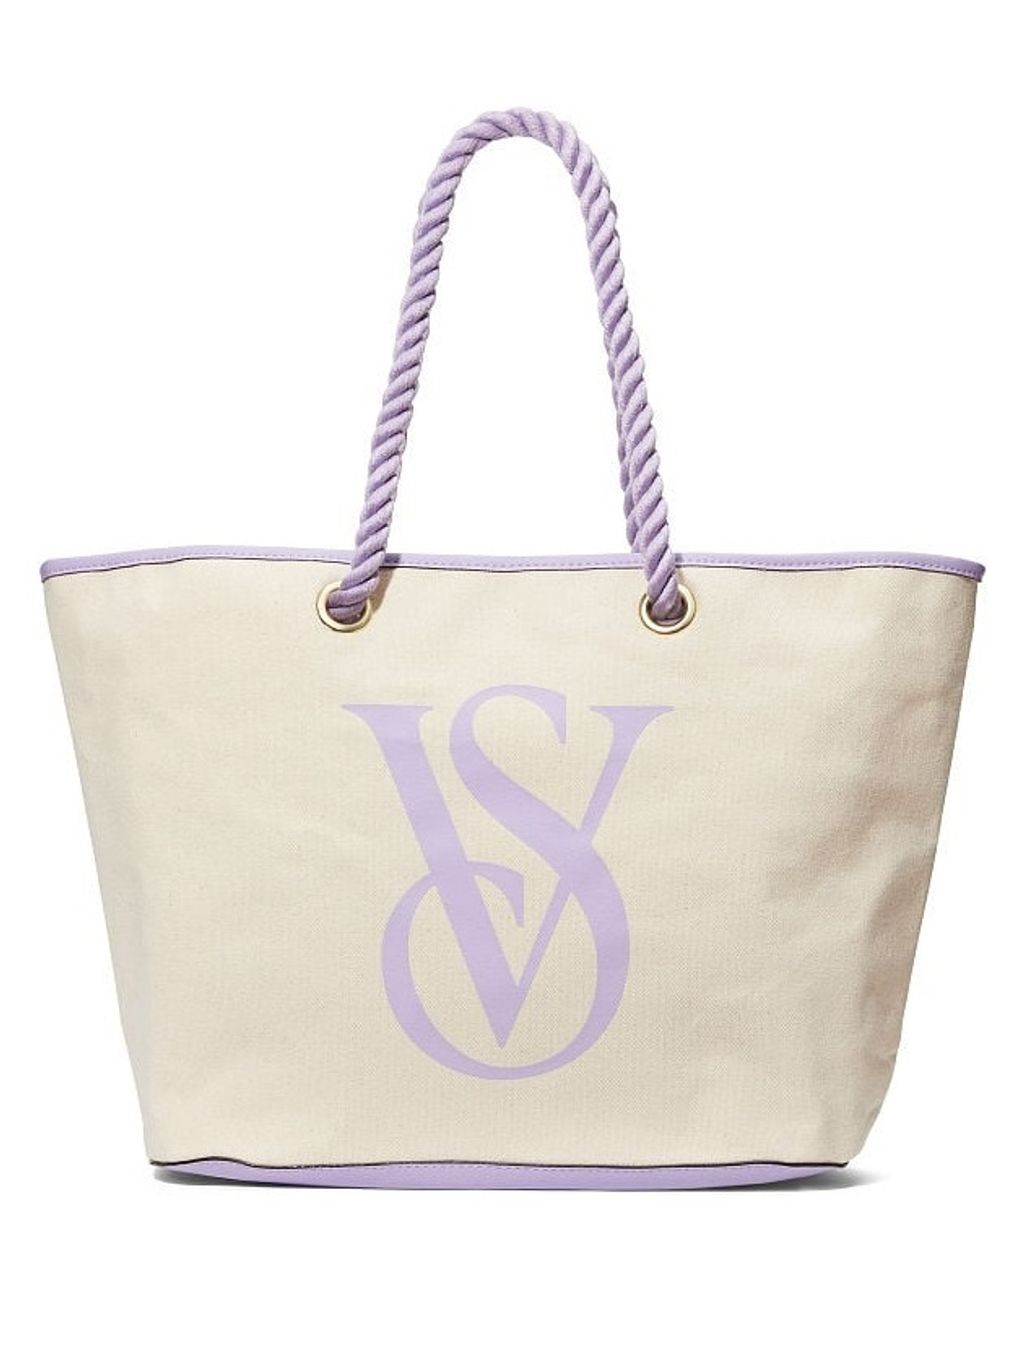 Victoria's Secret Large Canvas Tote Bag - Lavender – Beautyspot